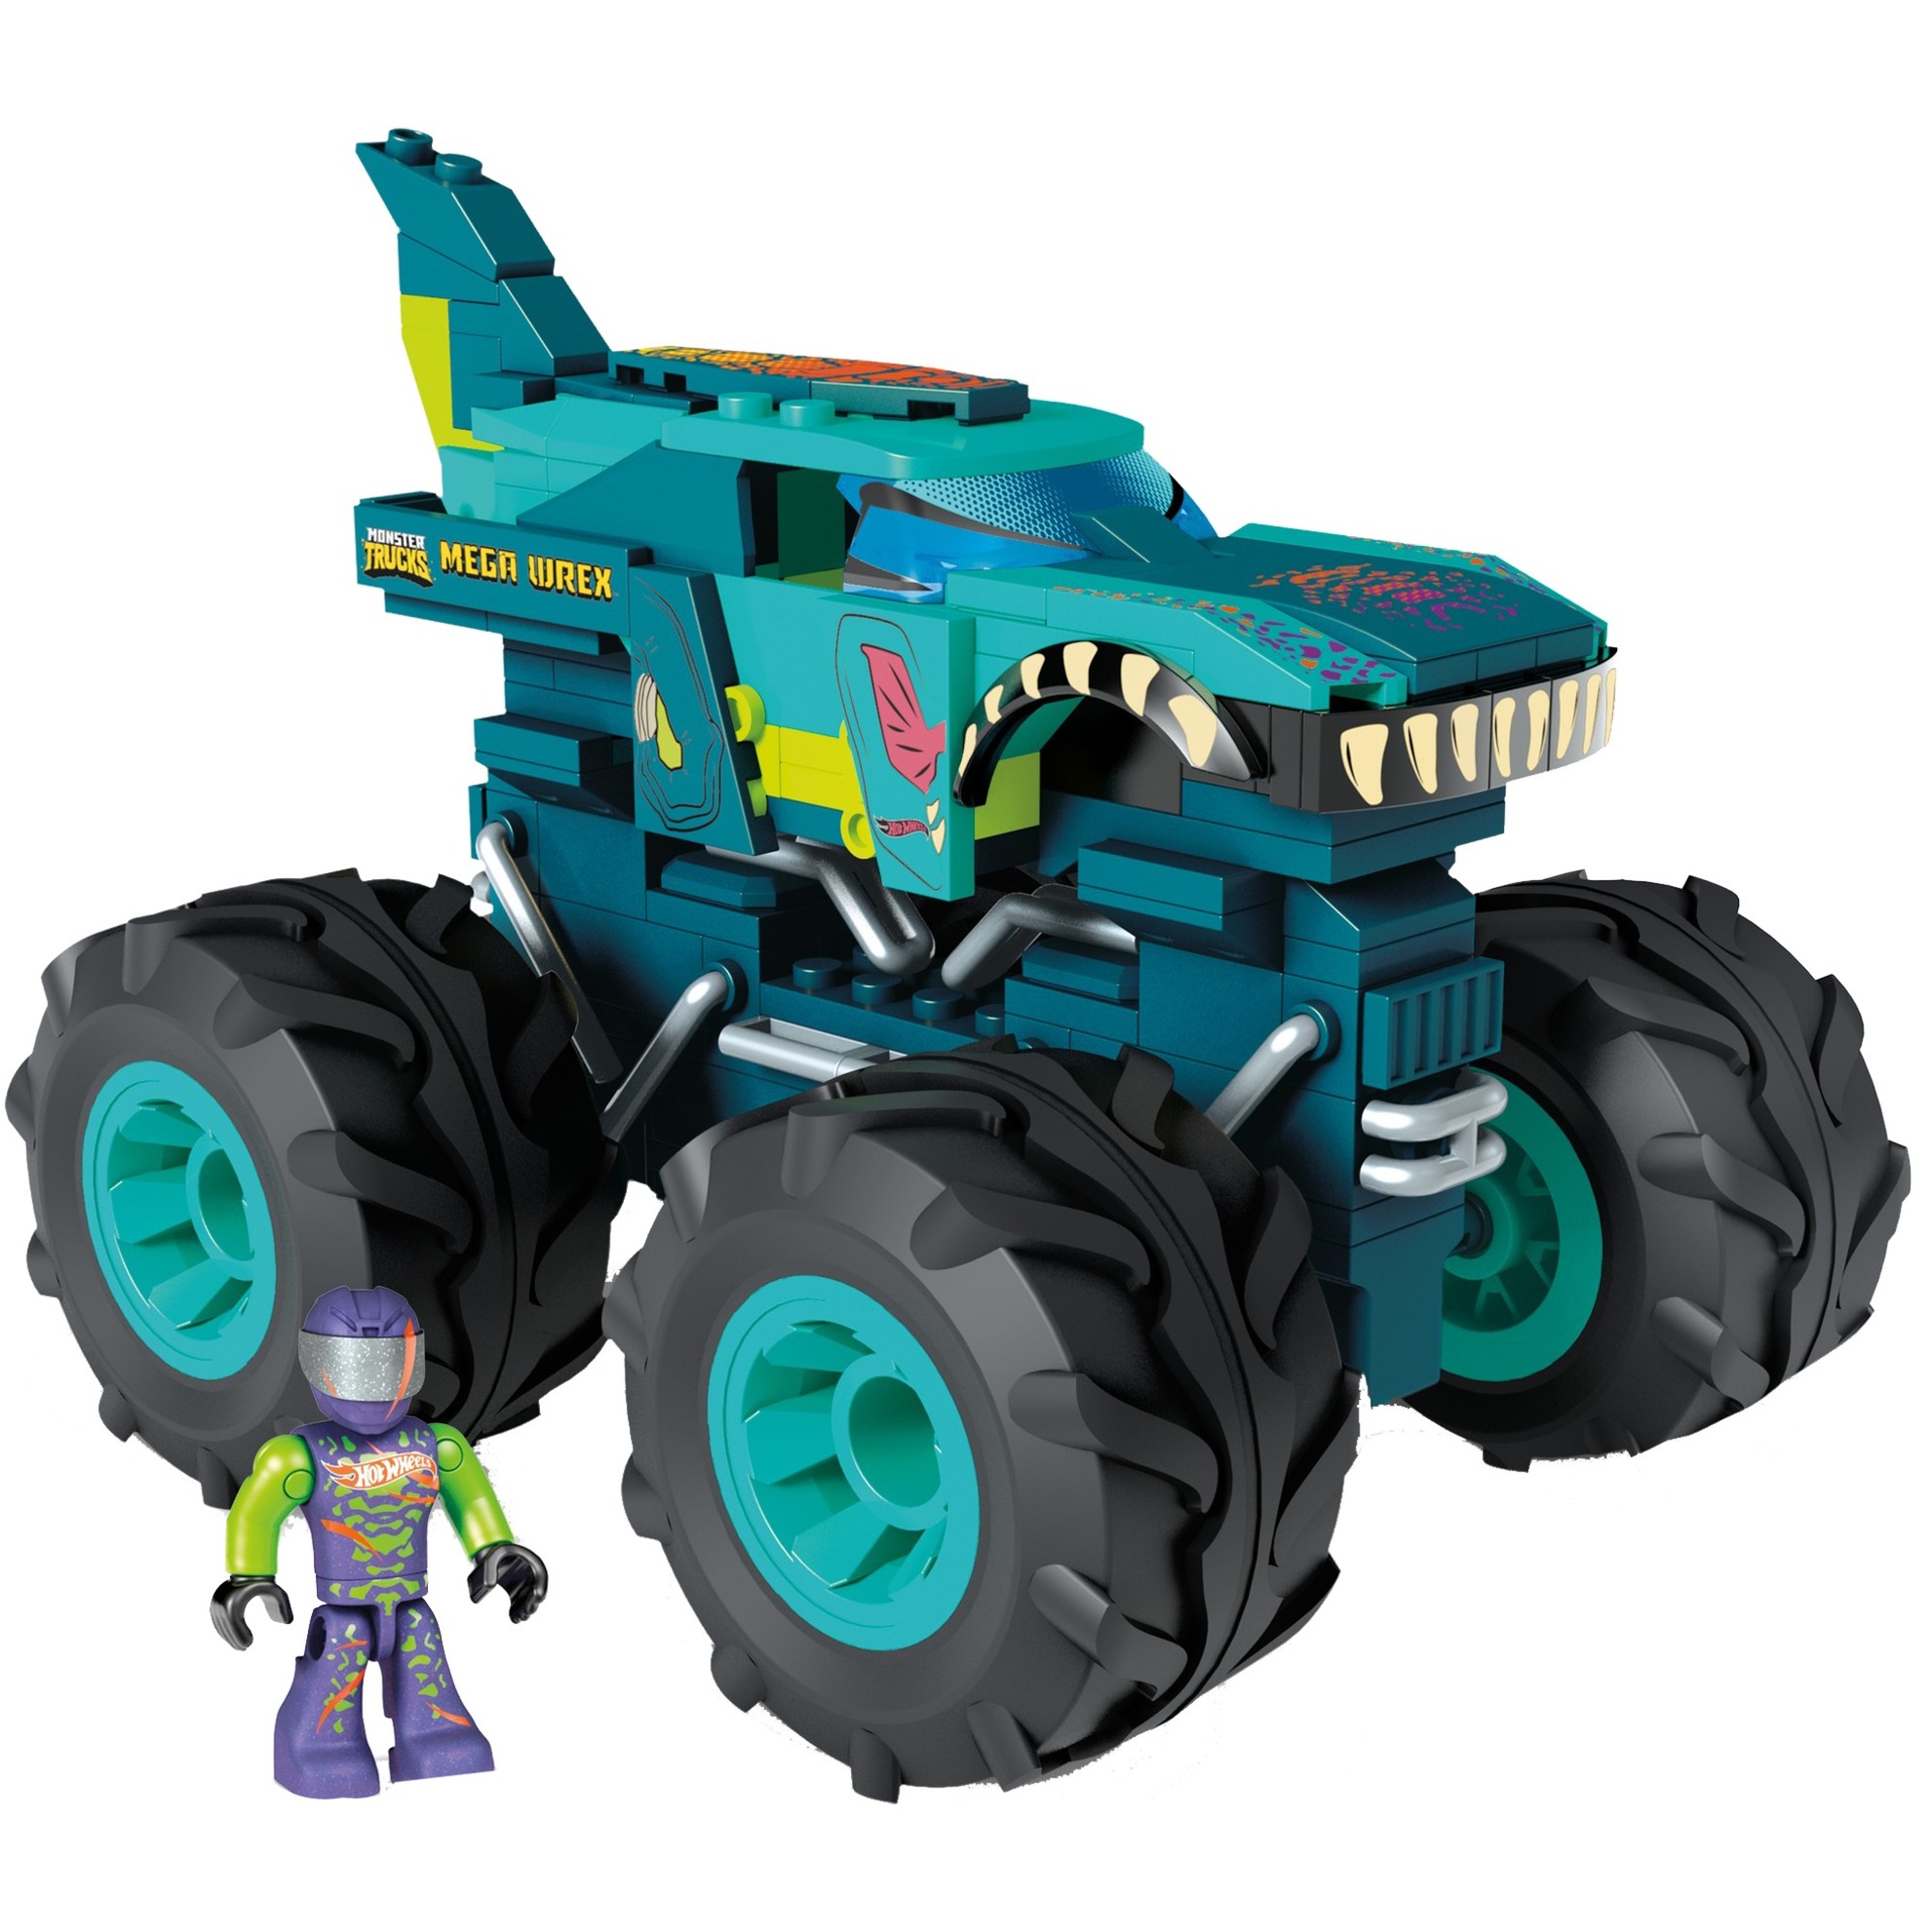 Image of Alternate - Hot Wheels Mega-Wrex Monster Truck, Konstruktionsspielzeug online einkaufen bei Alternate